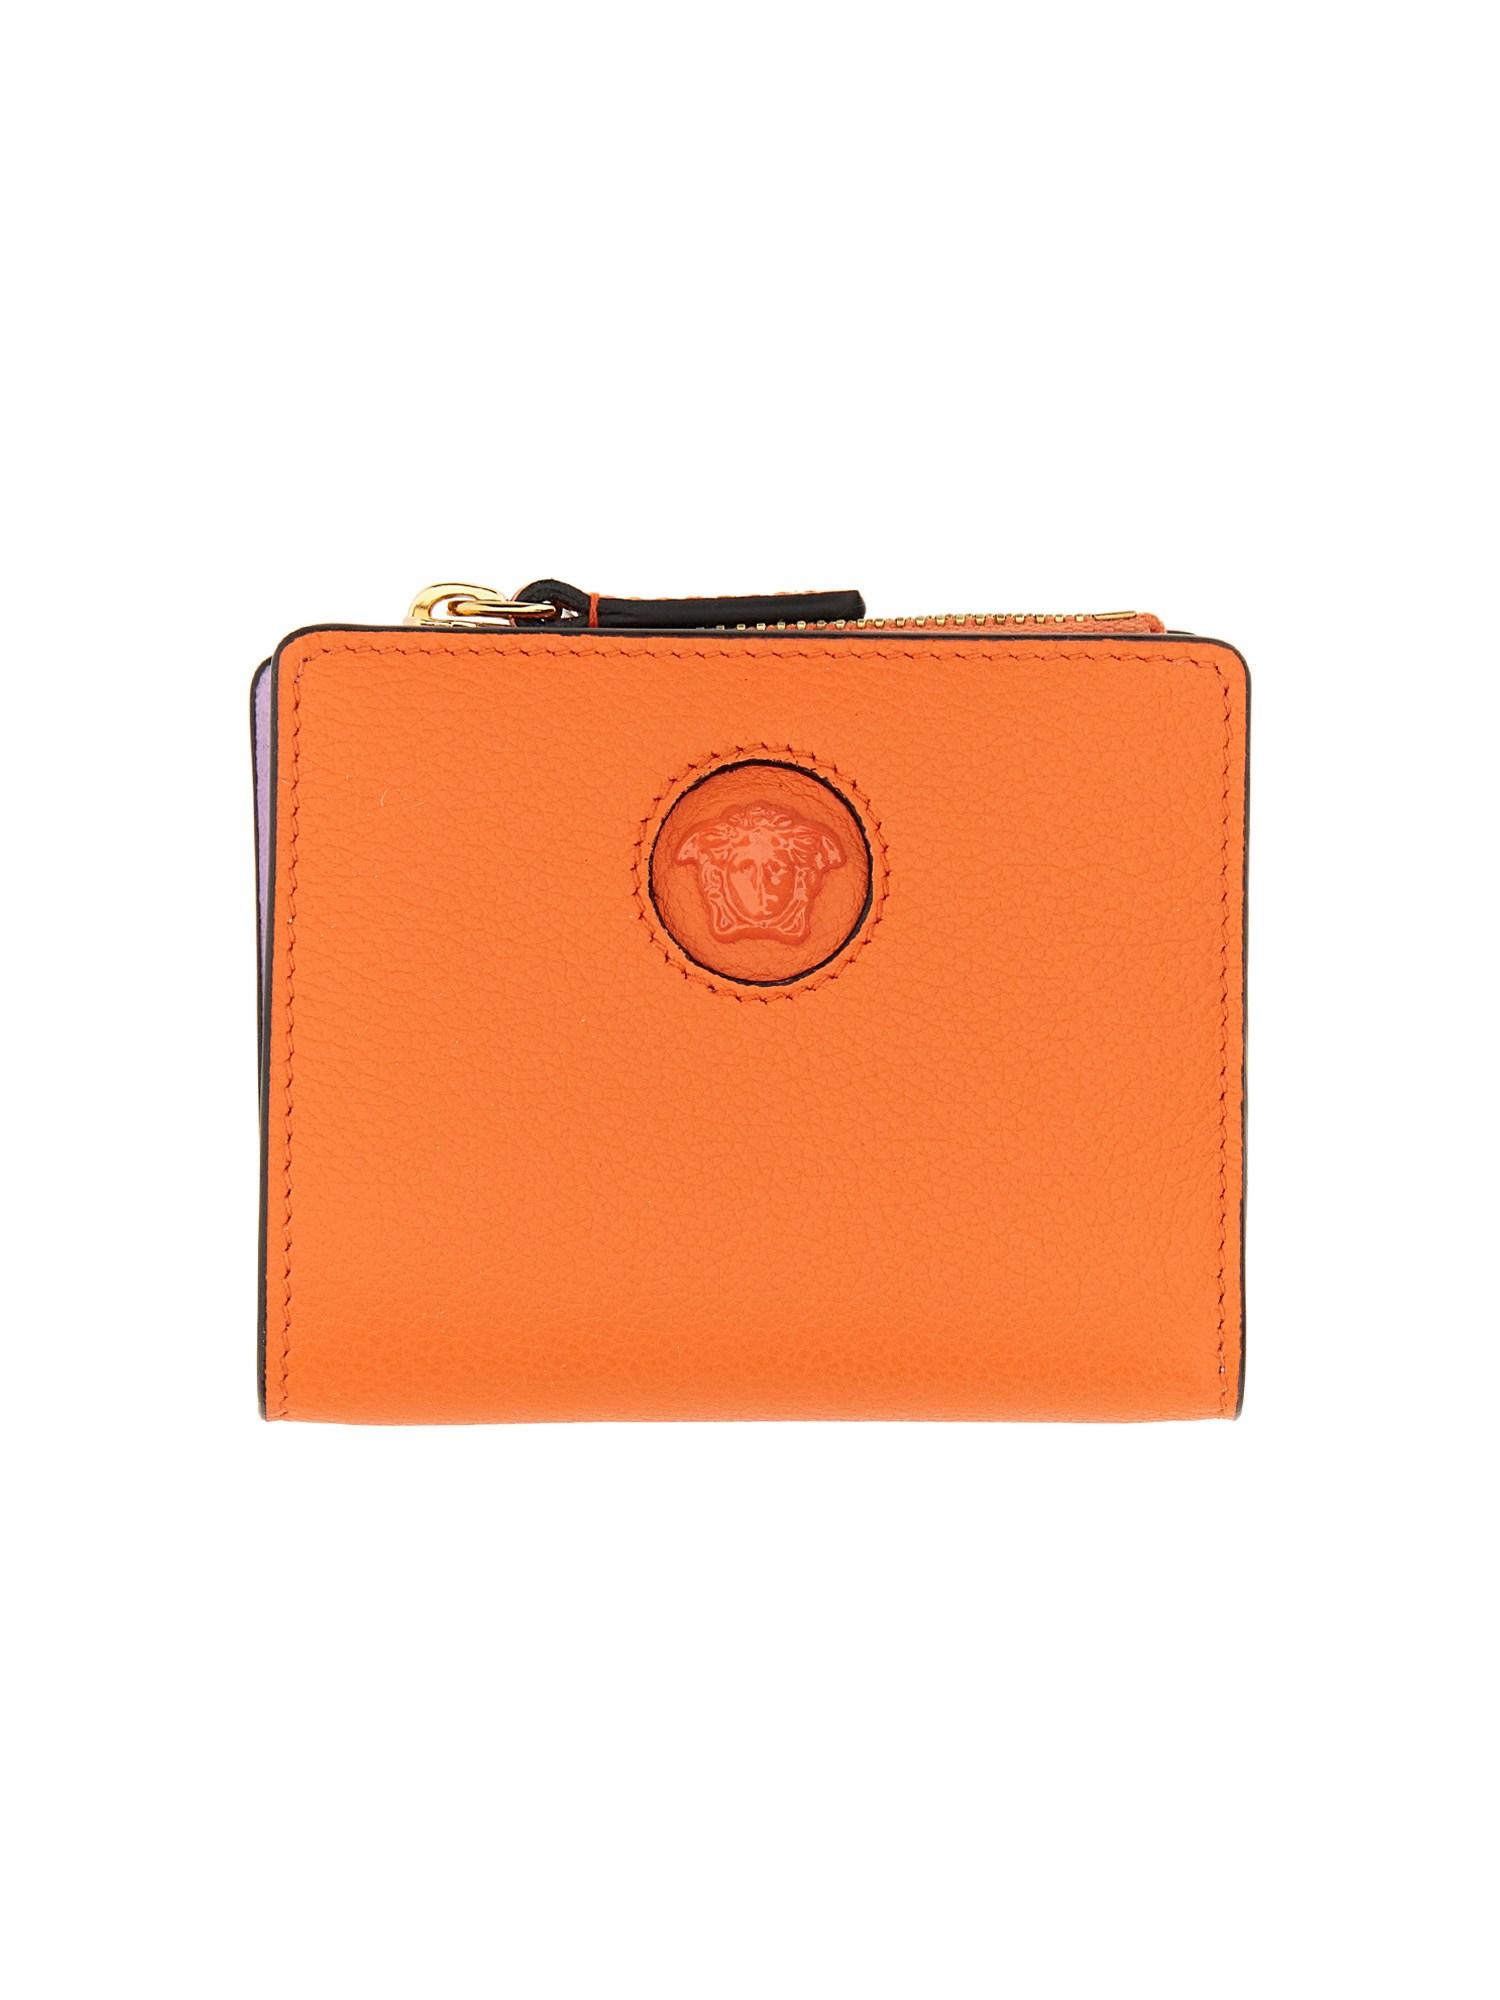 Versace Jellyfish Wallet in Orange | Lyst